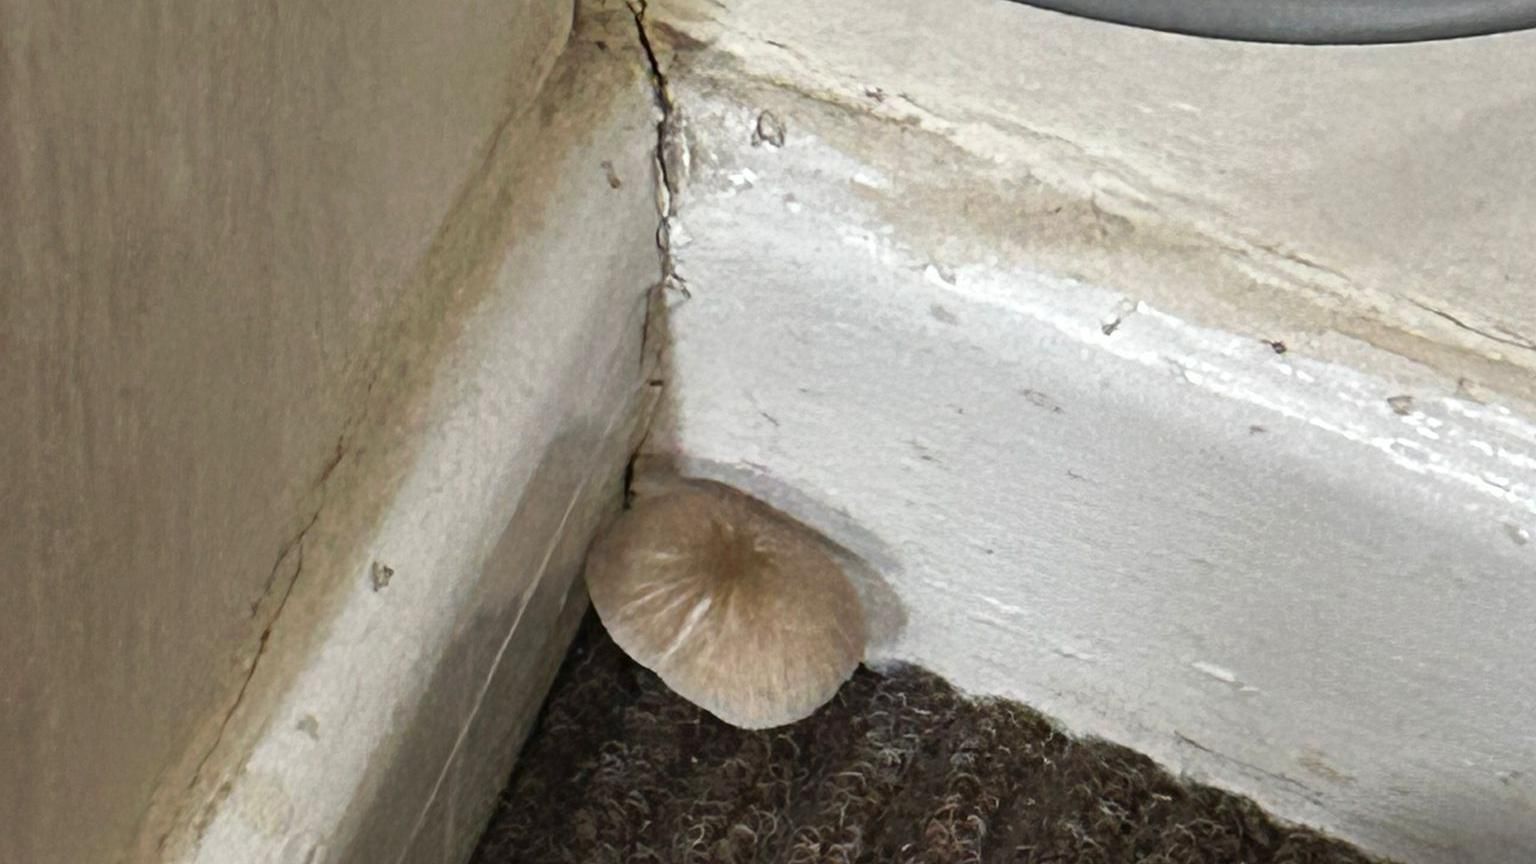 Mould mushroom growing in corner of room